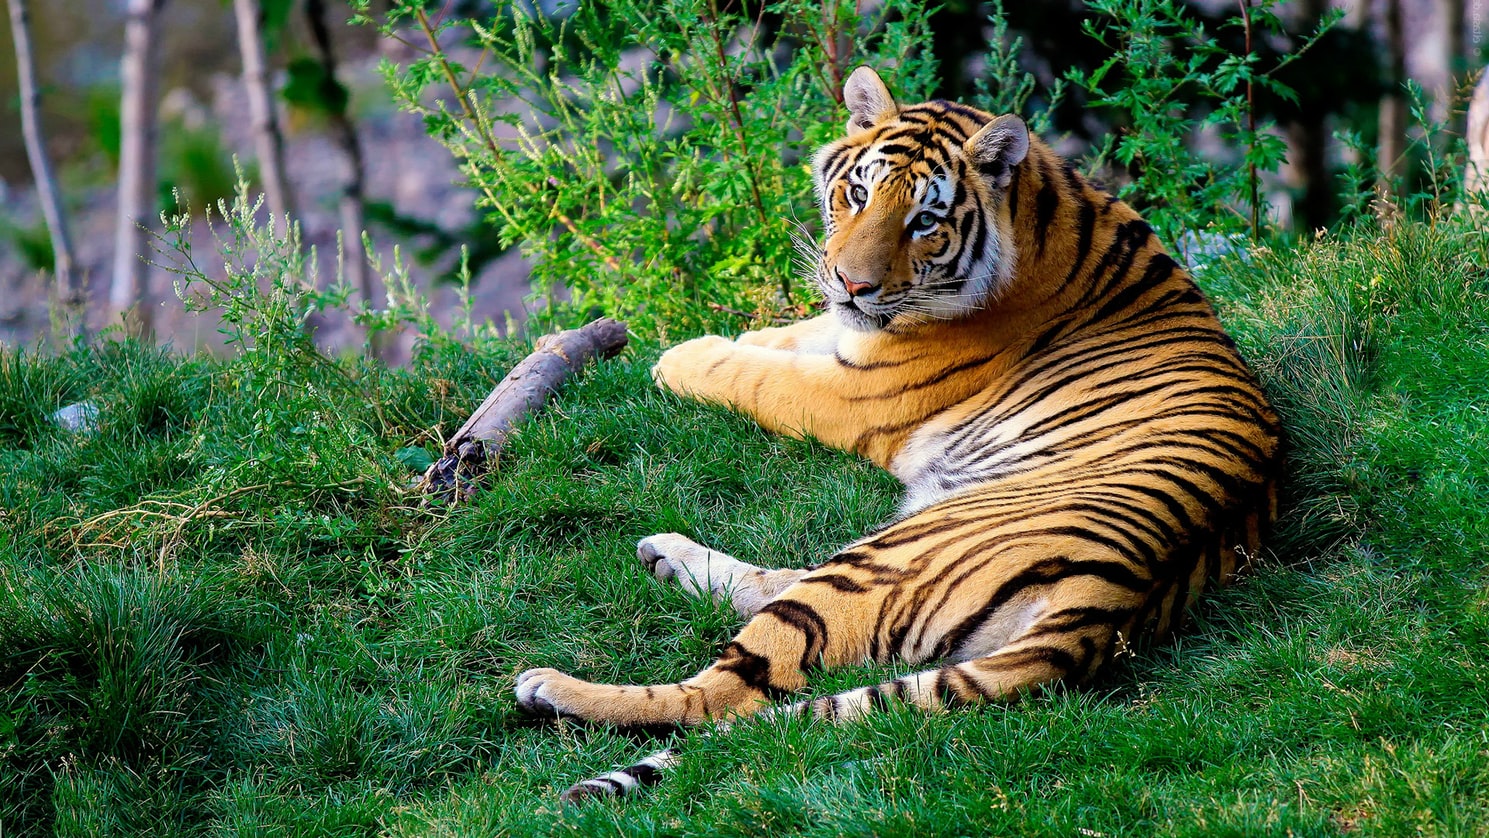 A Tiger Resting